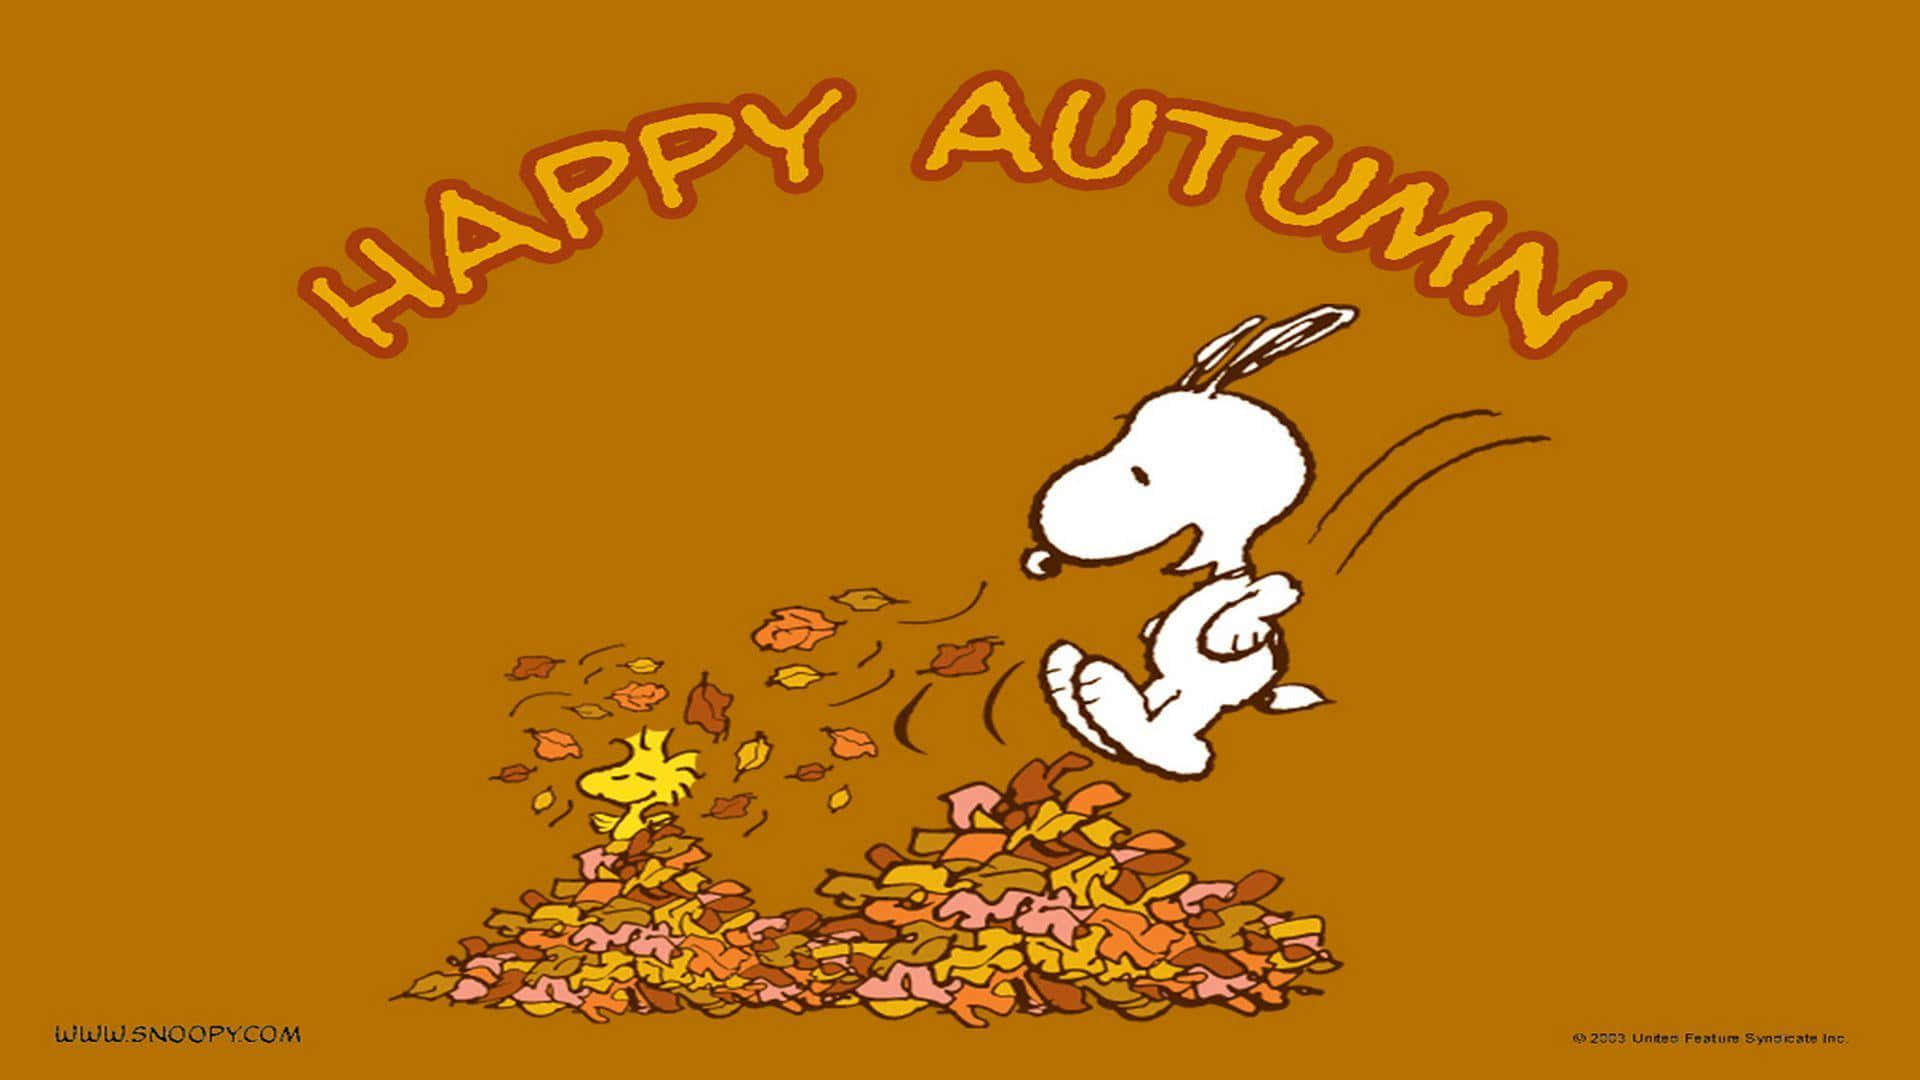 Snoopyfeiert Thanksgiving Mit Einem Herzlichen Dankbarkeitsgefühl Auf Einer Computer- Oder Handy-hintergrundbild. Wallpaper